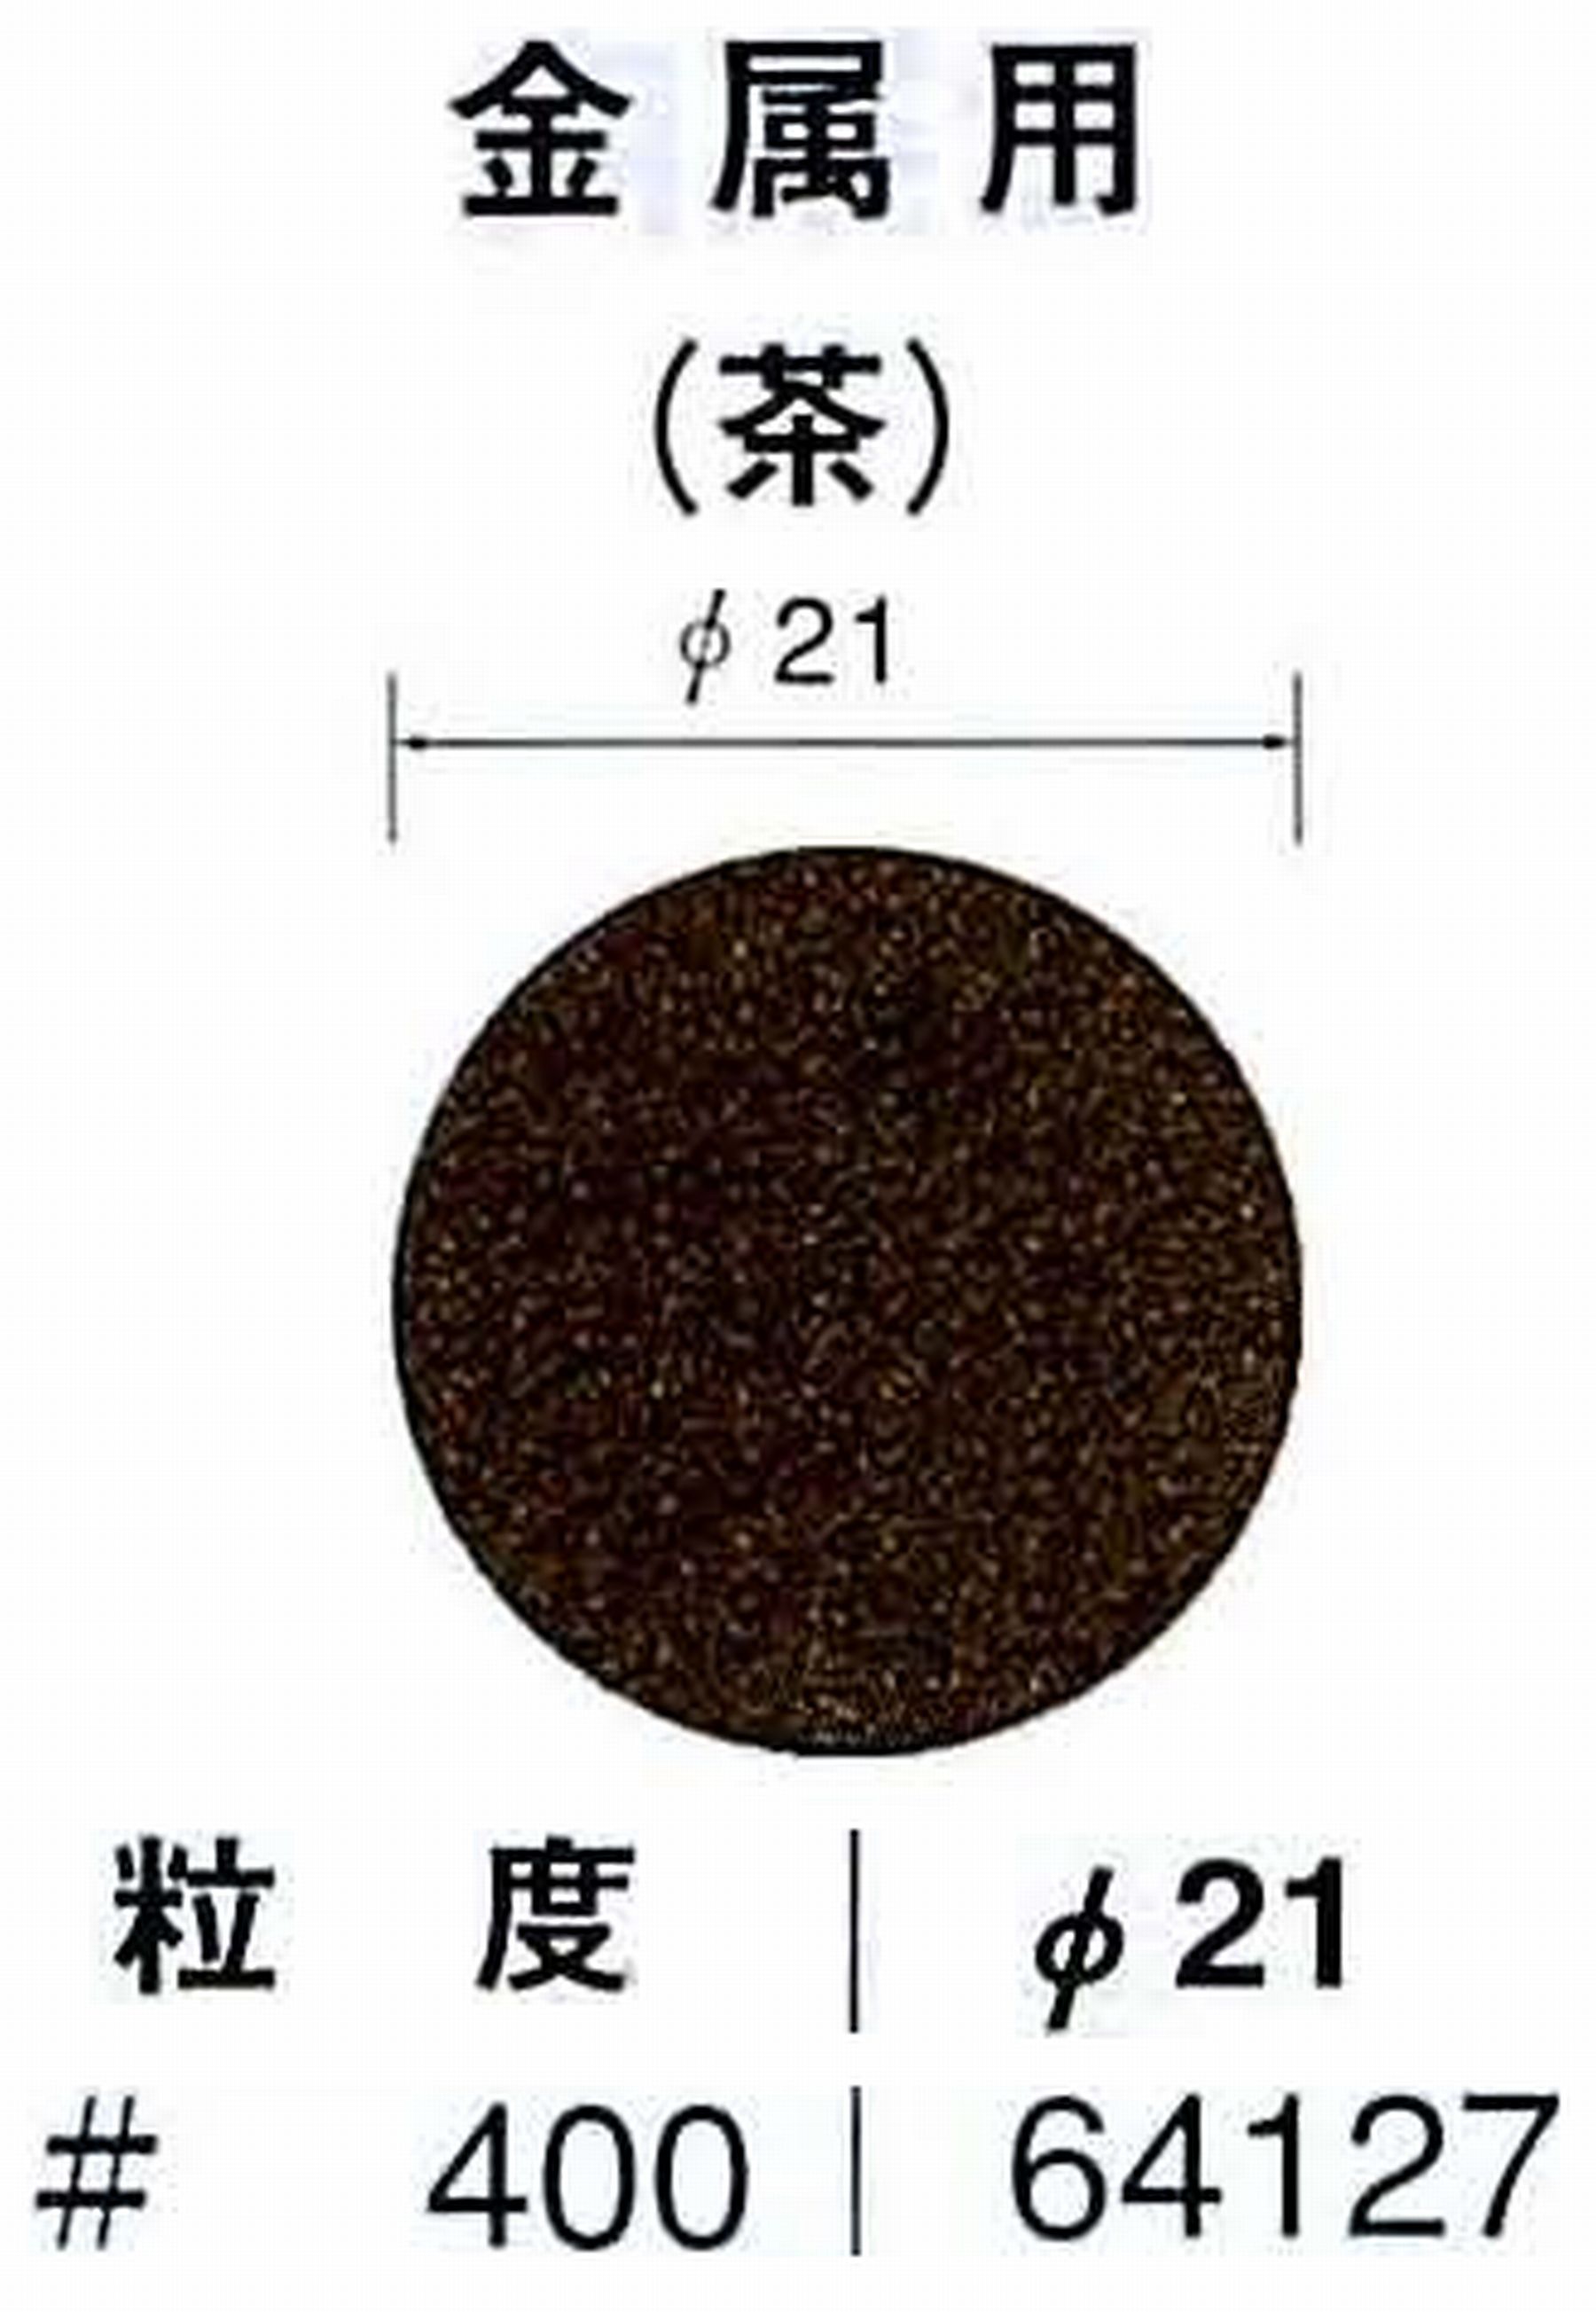 ナカニシ/NAKANISHI アングルグラインダ(電動・エアー) アングルアタッチメント専用工具 サンドペーパーディスク(布基材タイプ)裏面のり処理 64127